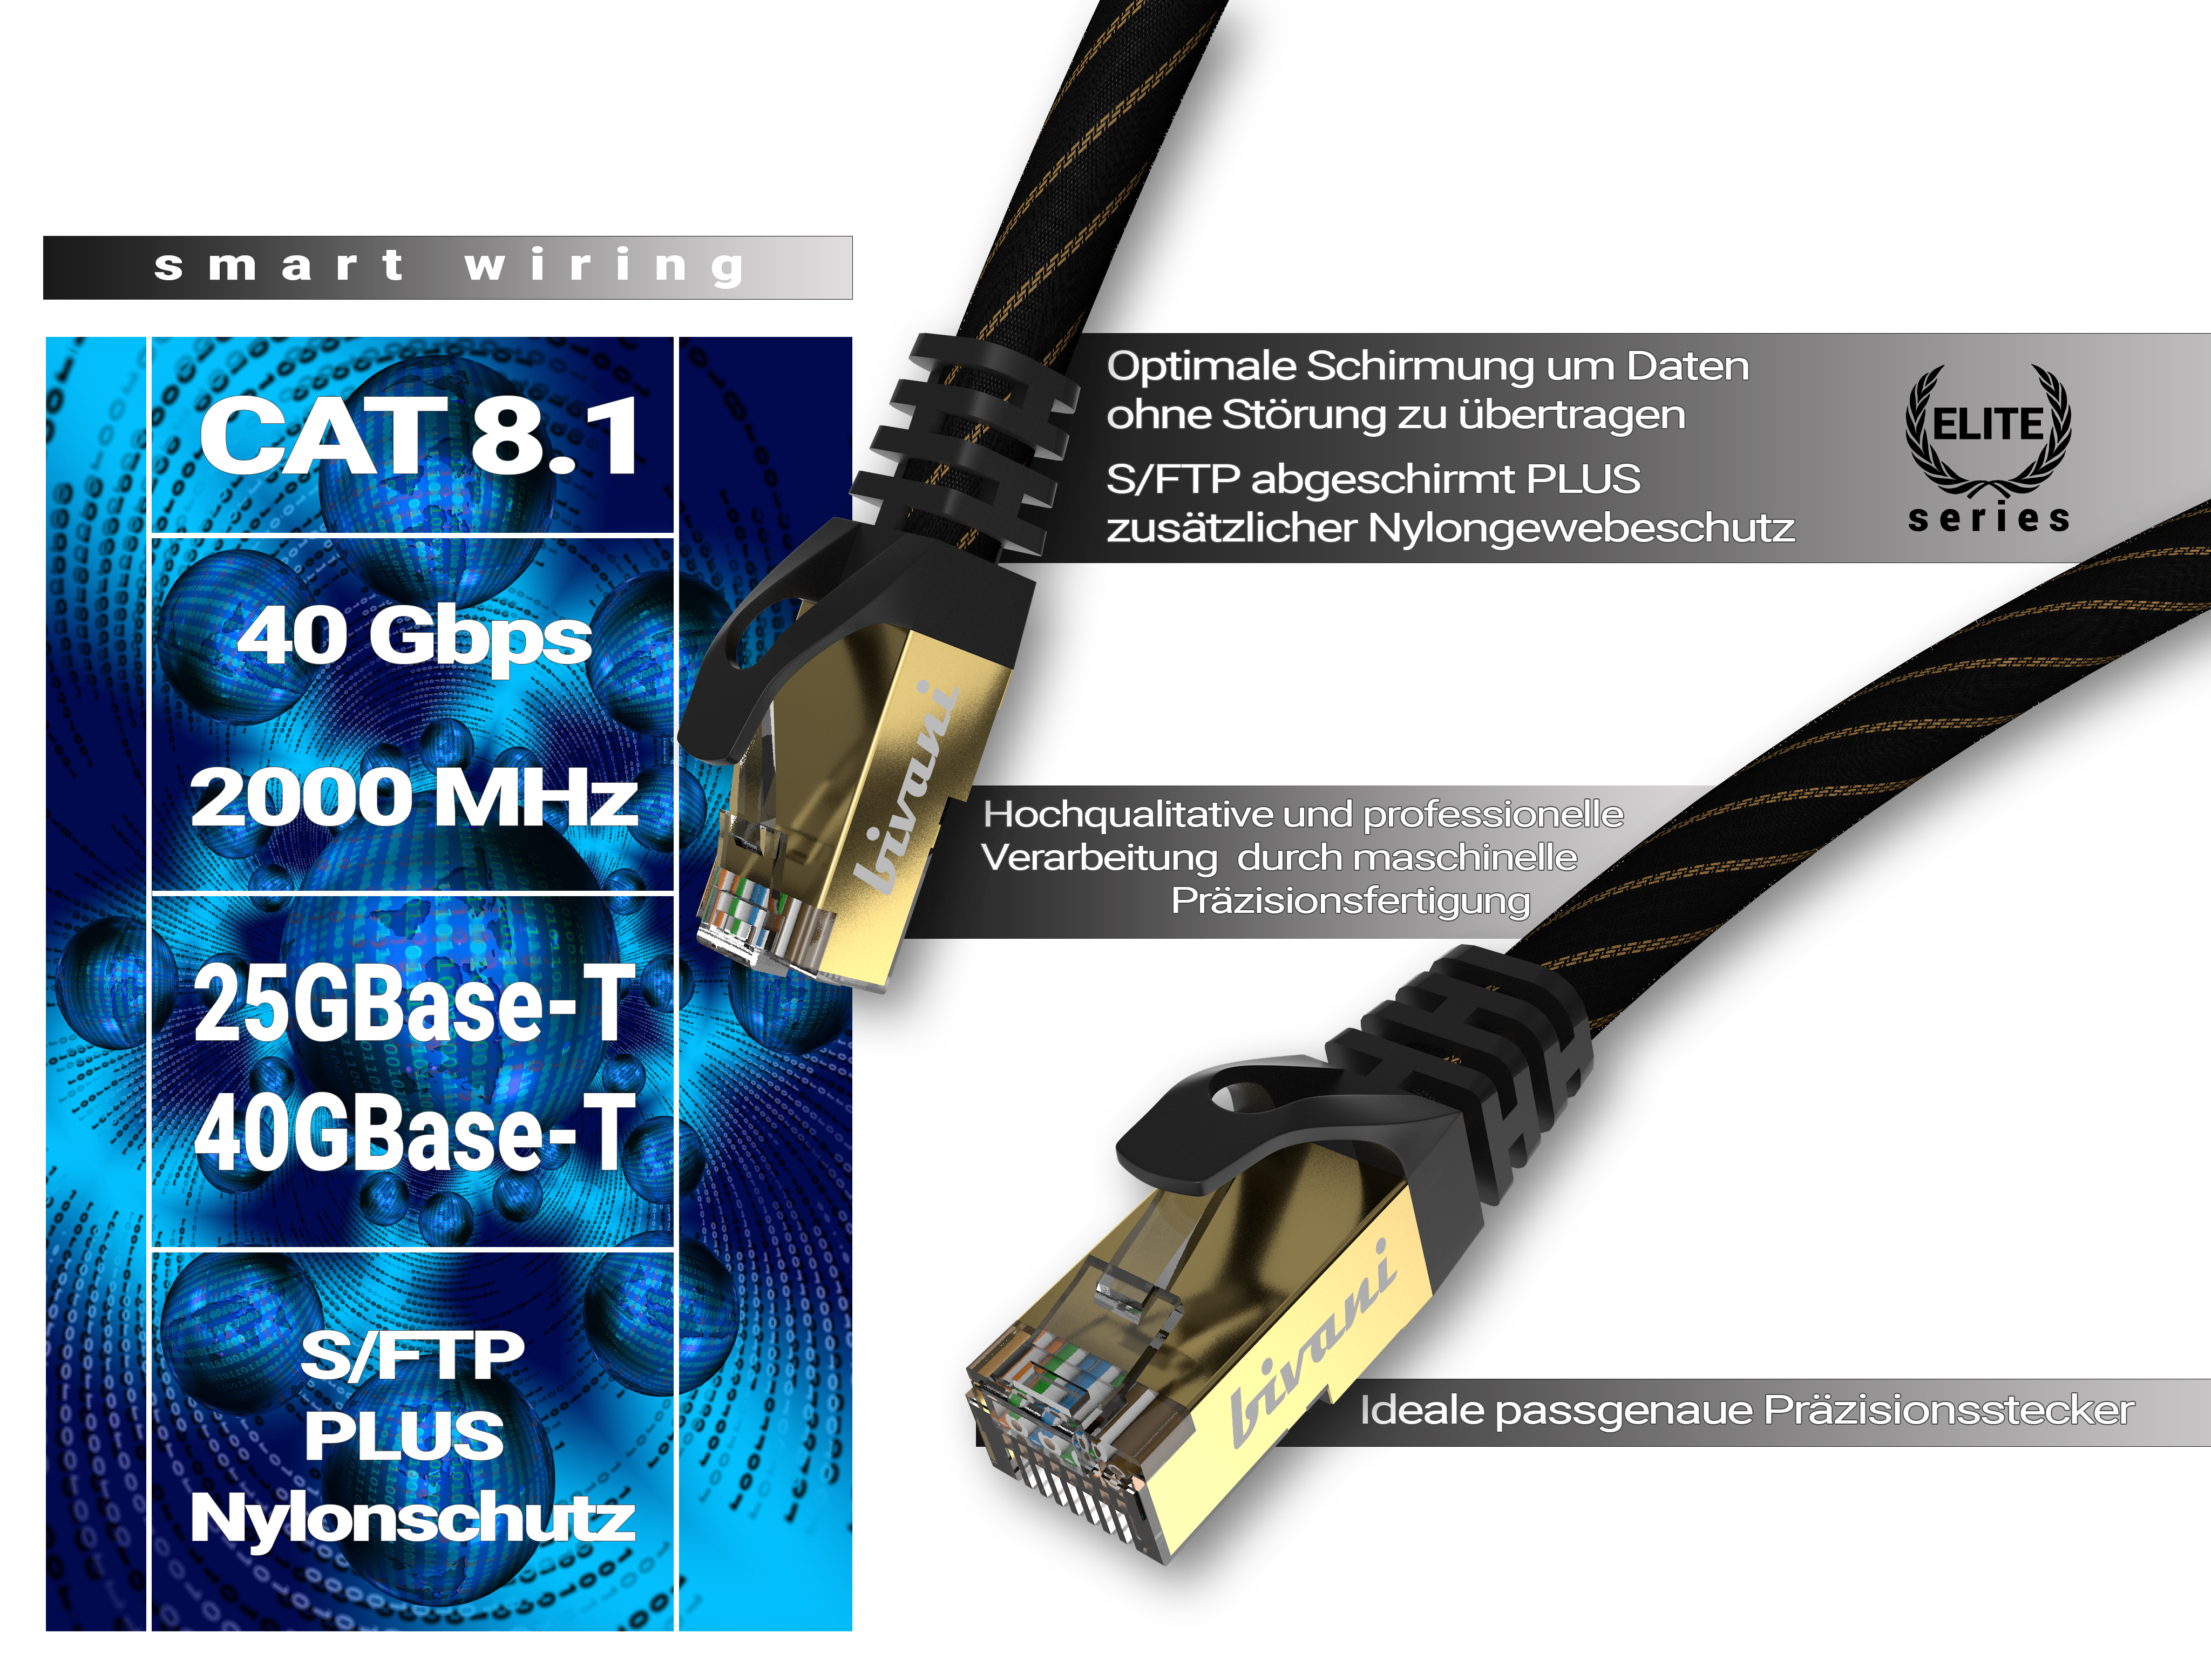 BIVANI Premium 40 - 1 8.1 CAT Elite-Series, LAN Netzwerkkabel, Gbps Kabel m